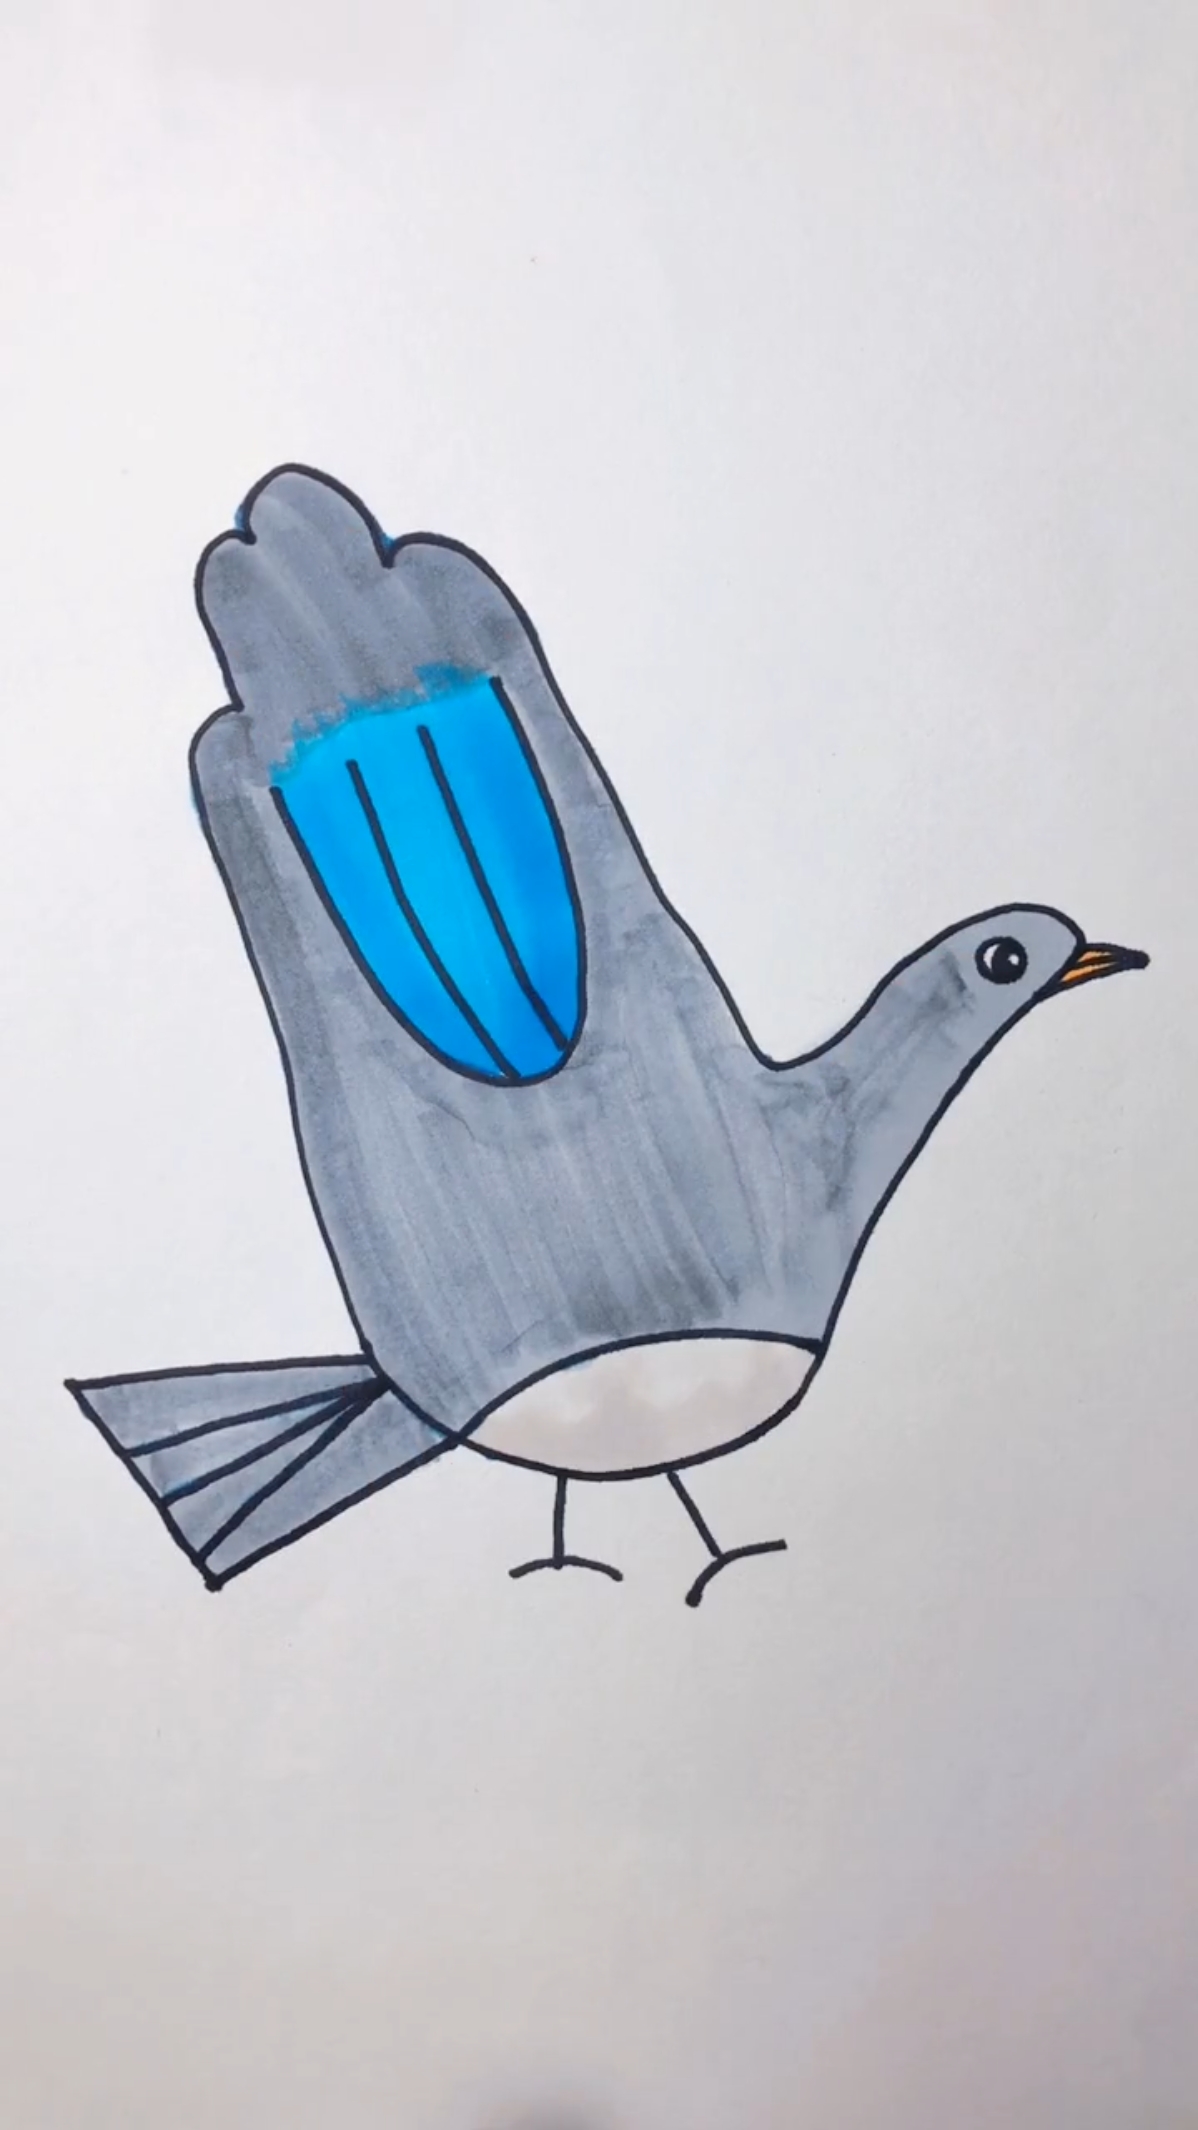 创意手掌画,画一只张开翅膀飞翔的鸽子,胖胖的小手画出来应该更好看